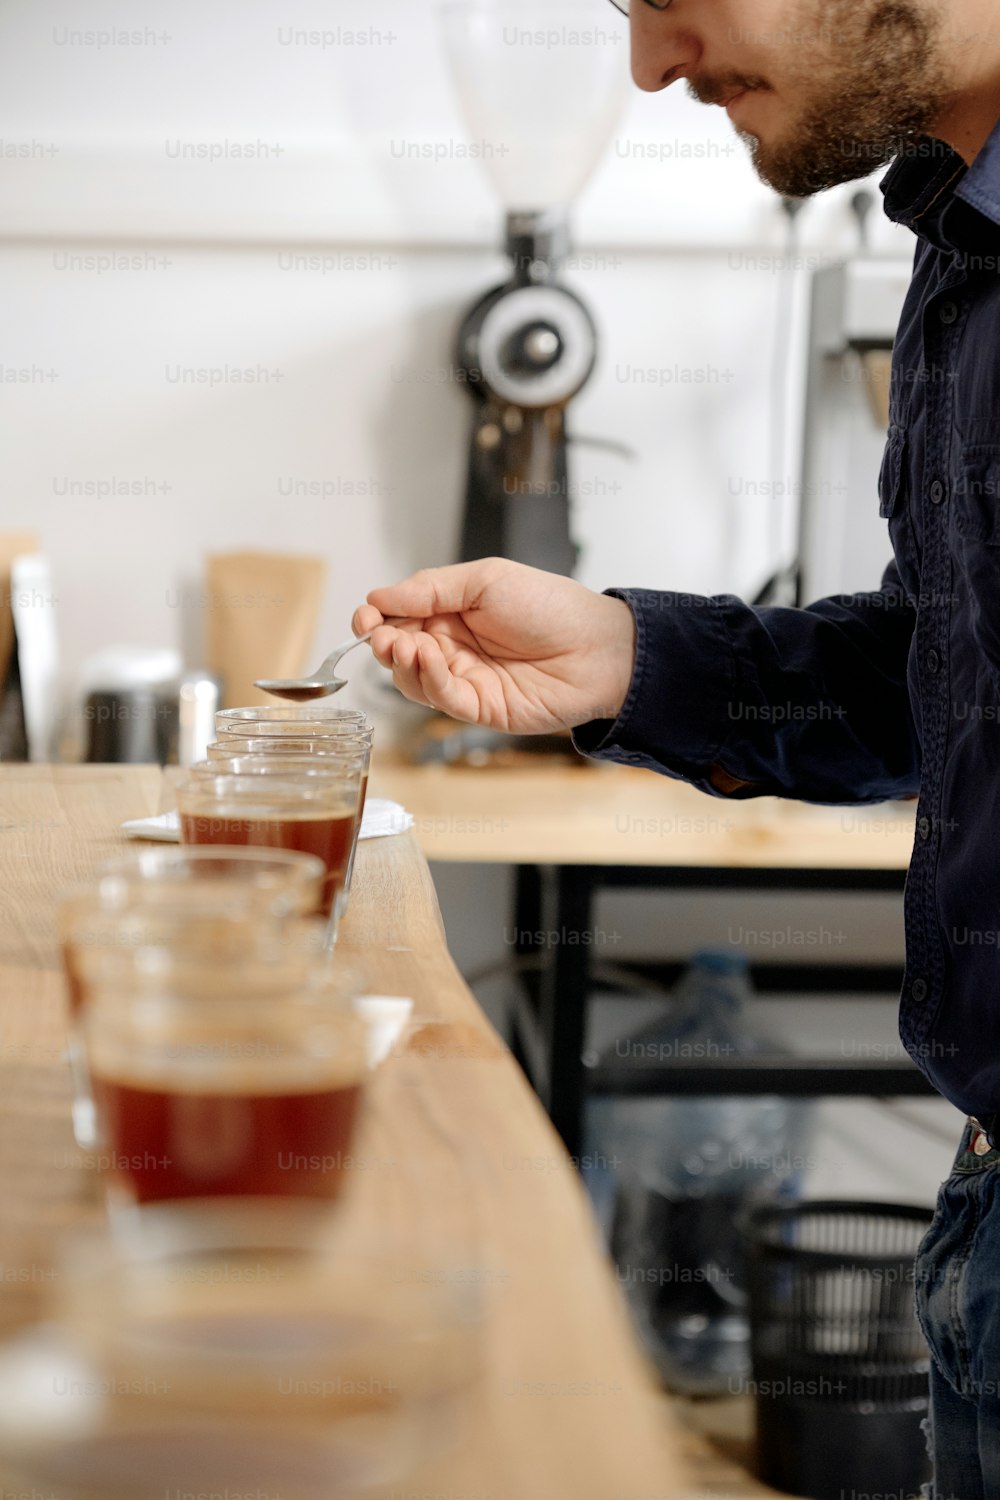 Ritratto di uomo che assaggia il caffè appena preparato in tazza di vetro, usando il cucchiaio, esaminando il gusto e il sapore del caffè alla prova di coppettazione del caffè per barosta